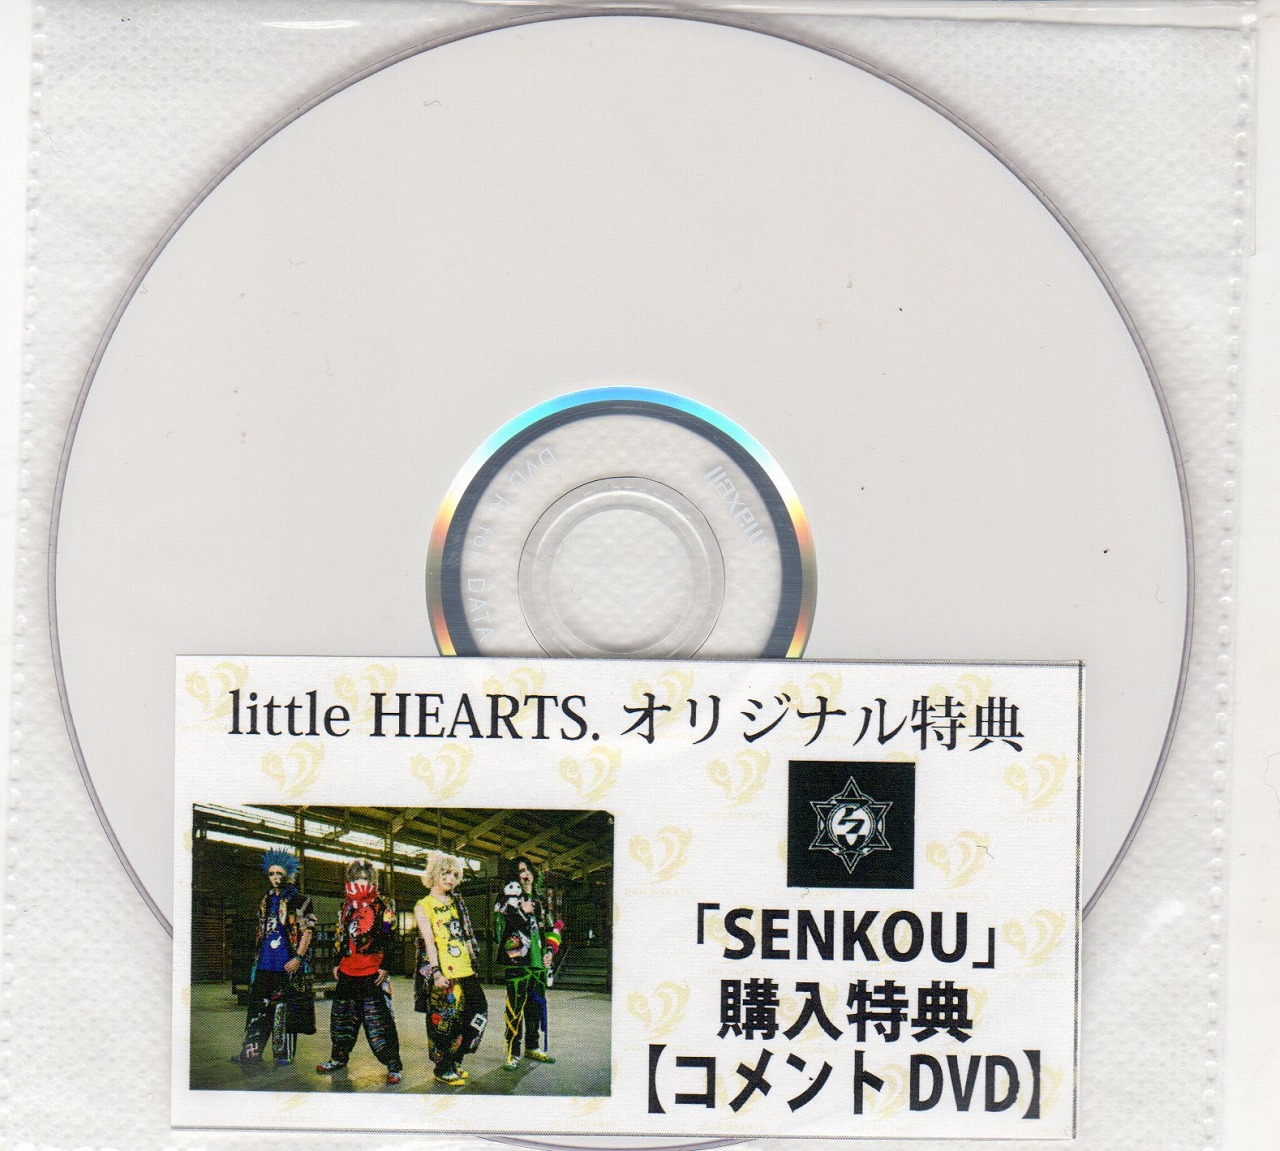 アクメ の DVD 【little HEARTS.】「SENKOU」購入特典 コメントDVD